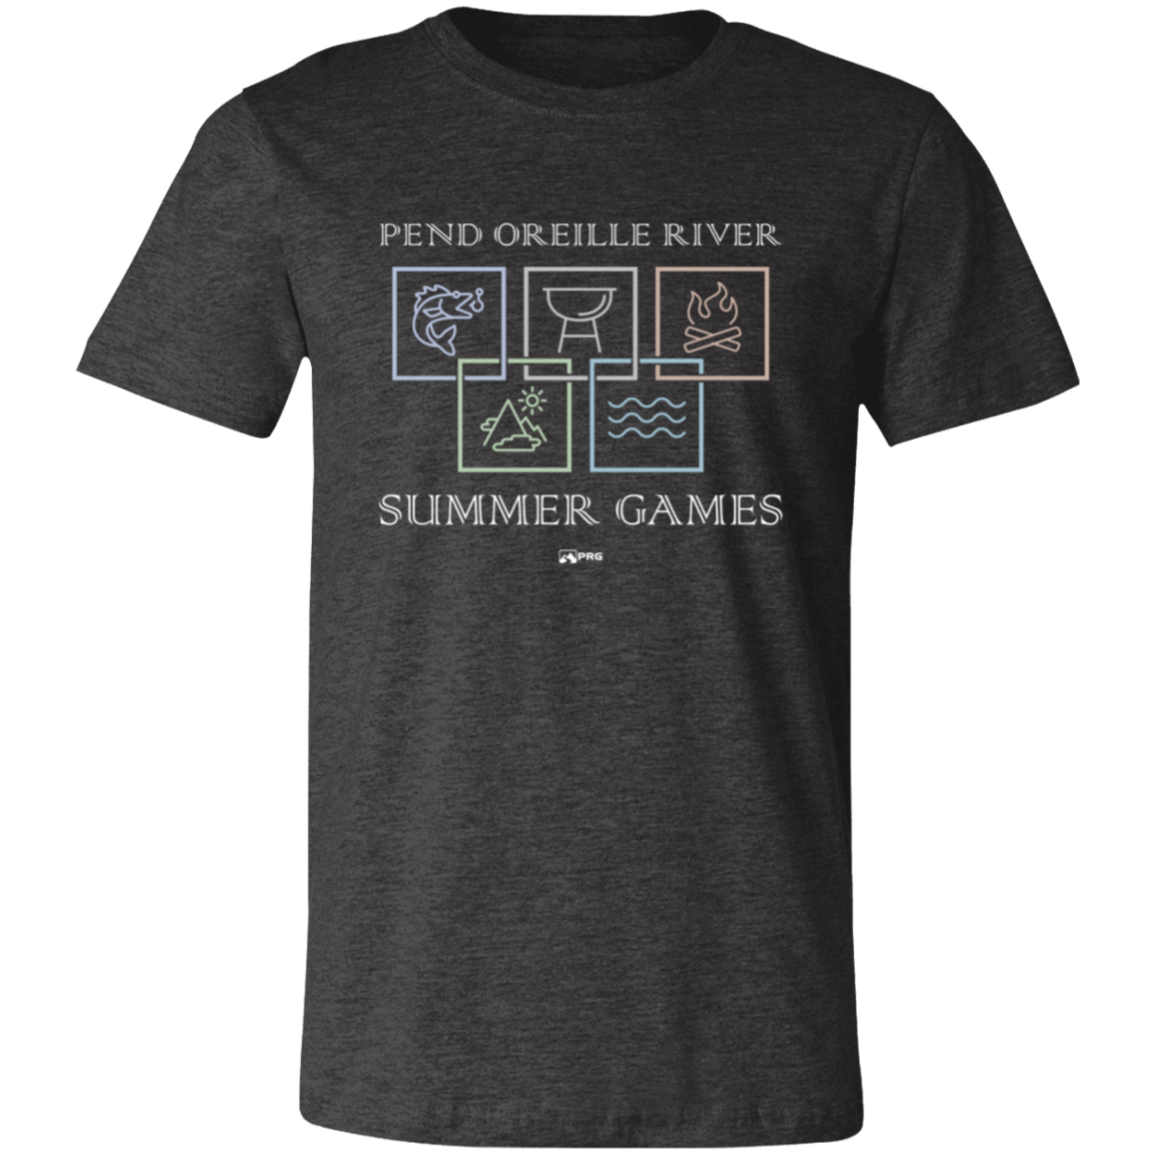 Summer Games - Shirt